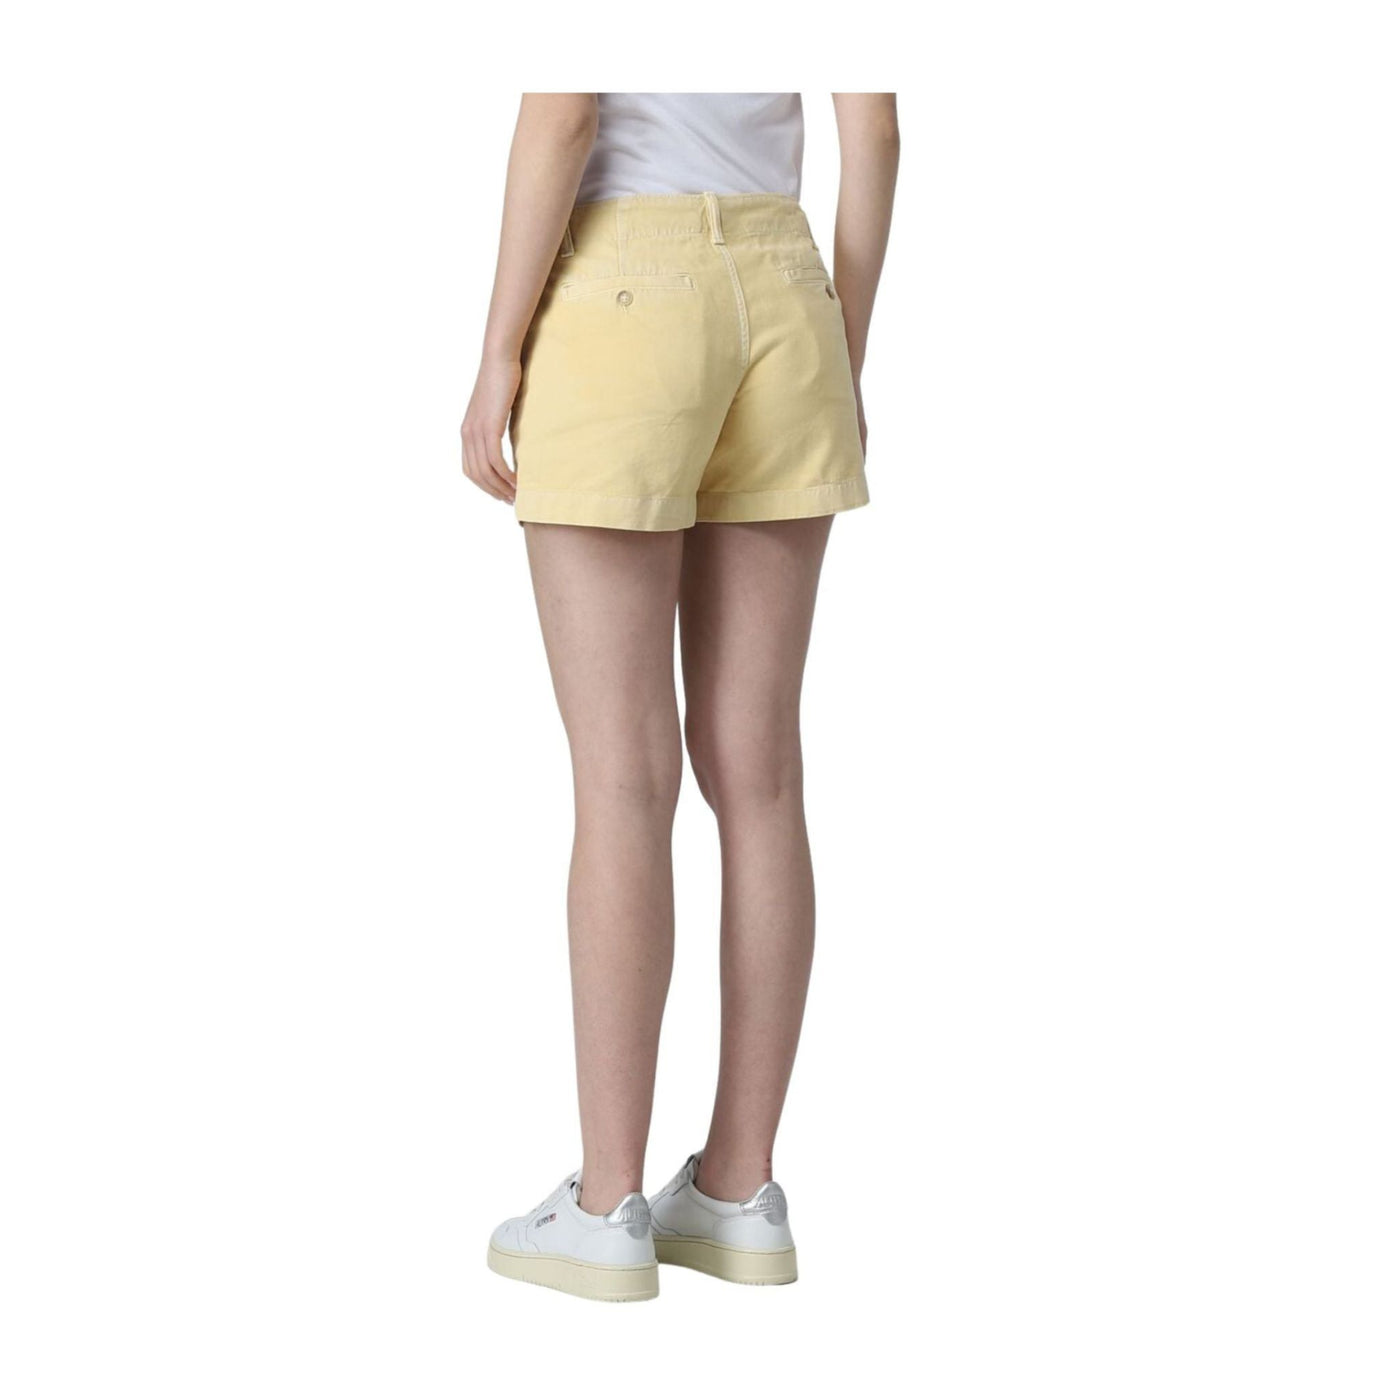 Yellow women's Bermuda shorts in cotton